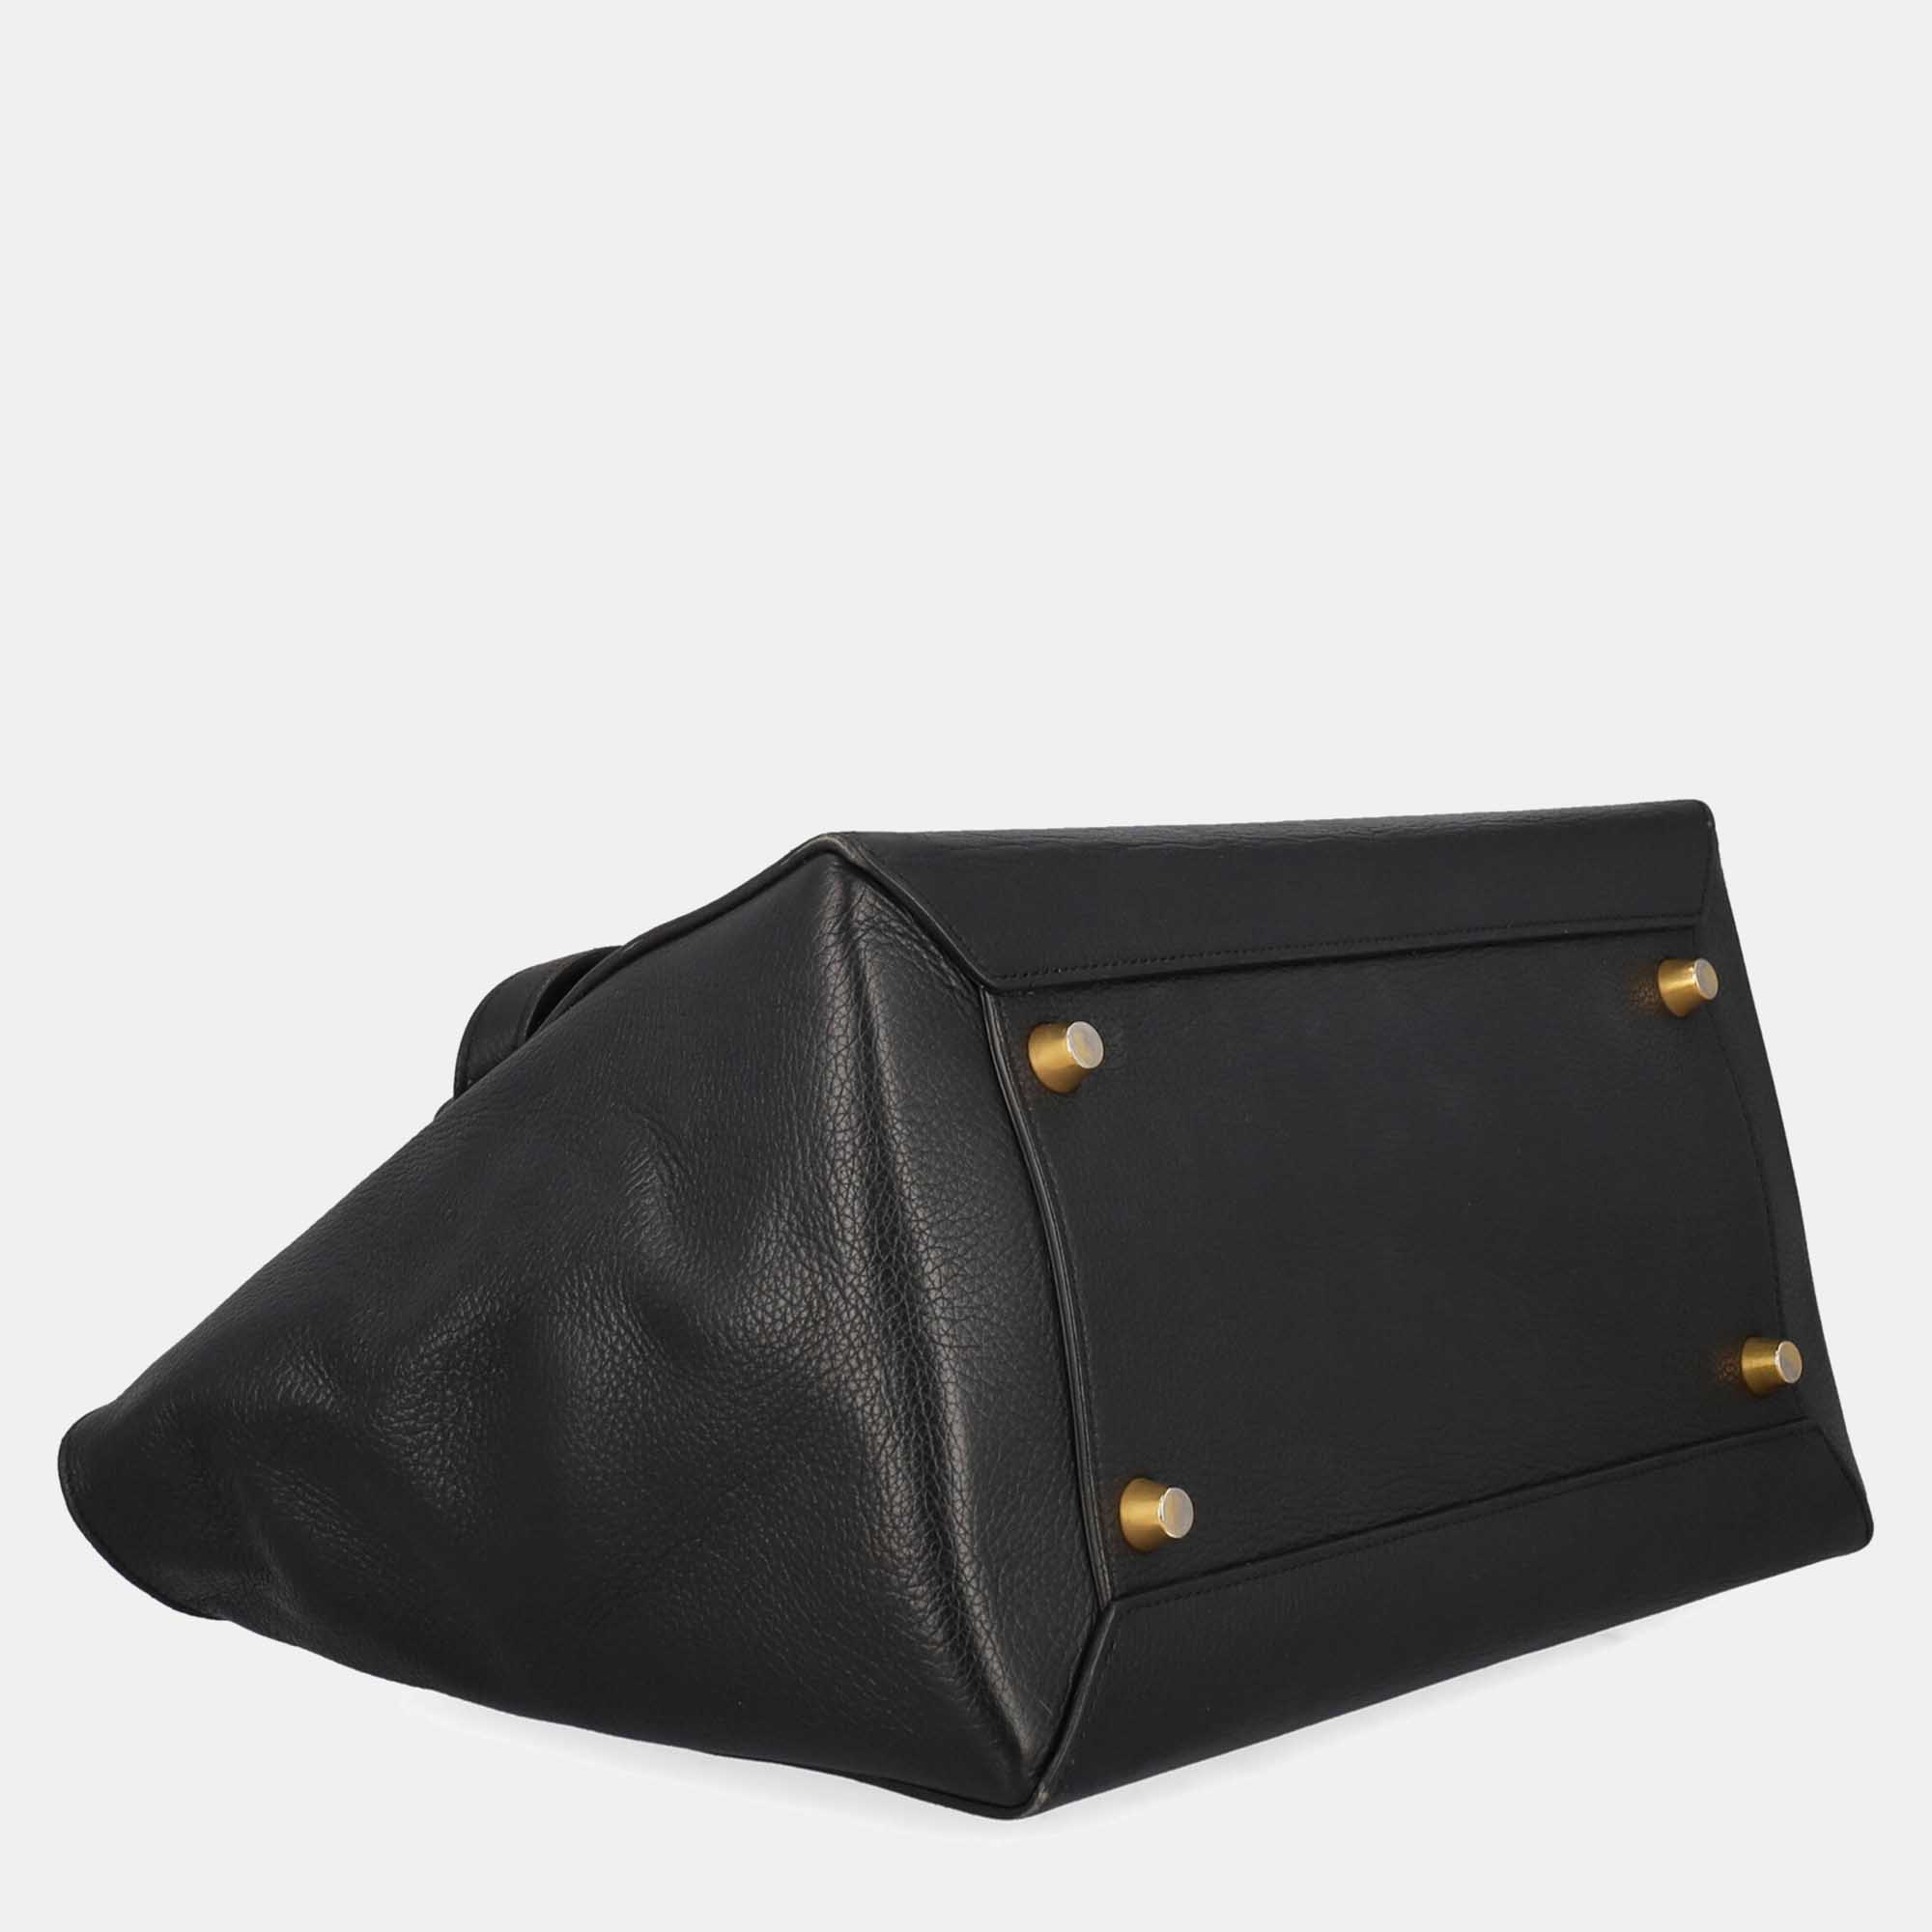 Celine Belt Bag -  Women's Leather Tote Bag - Black - One Size